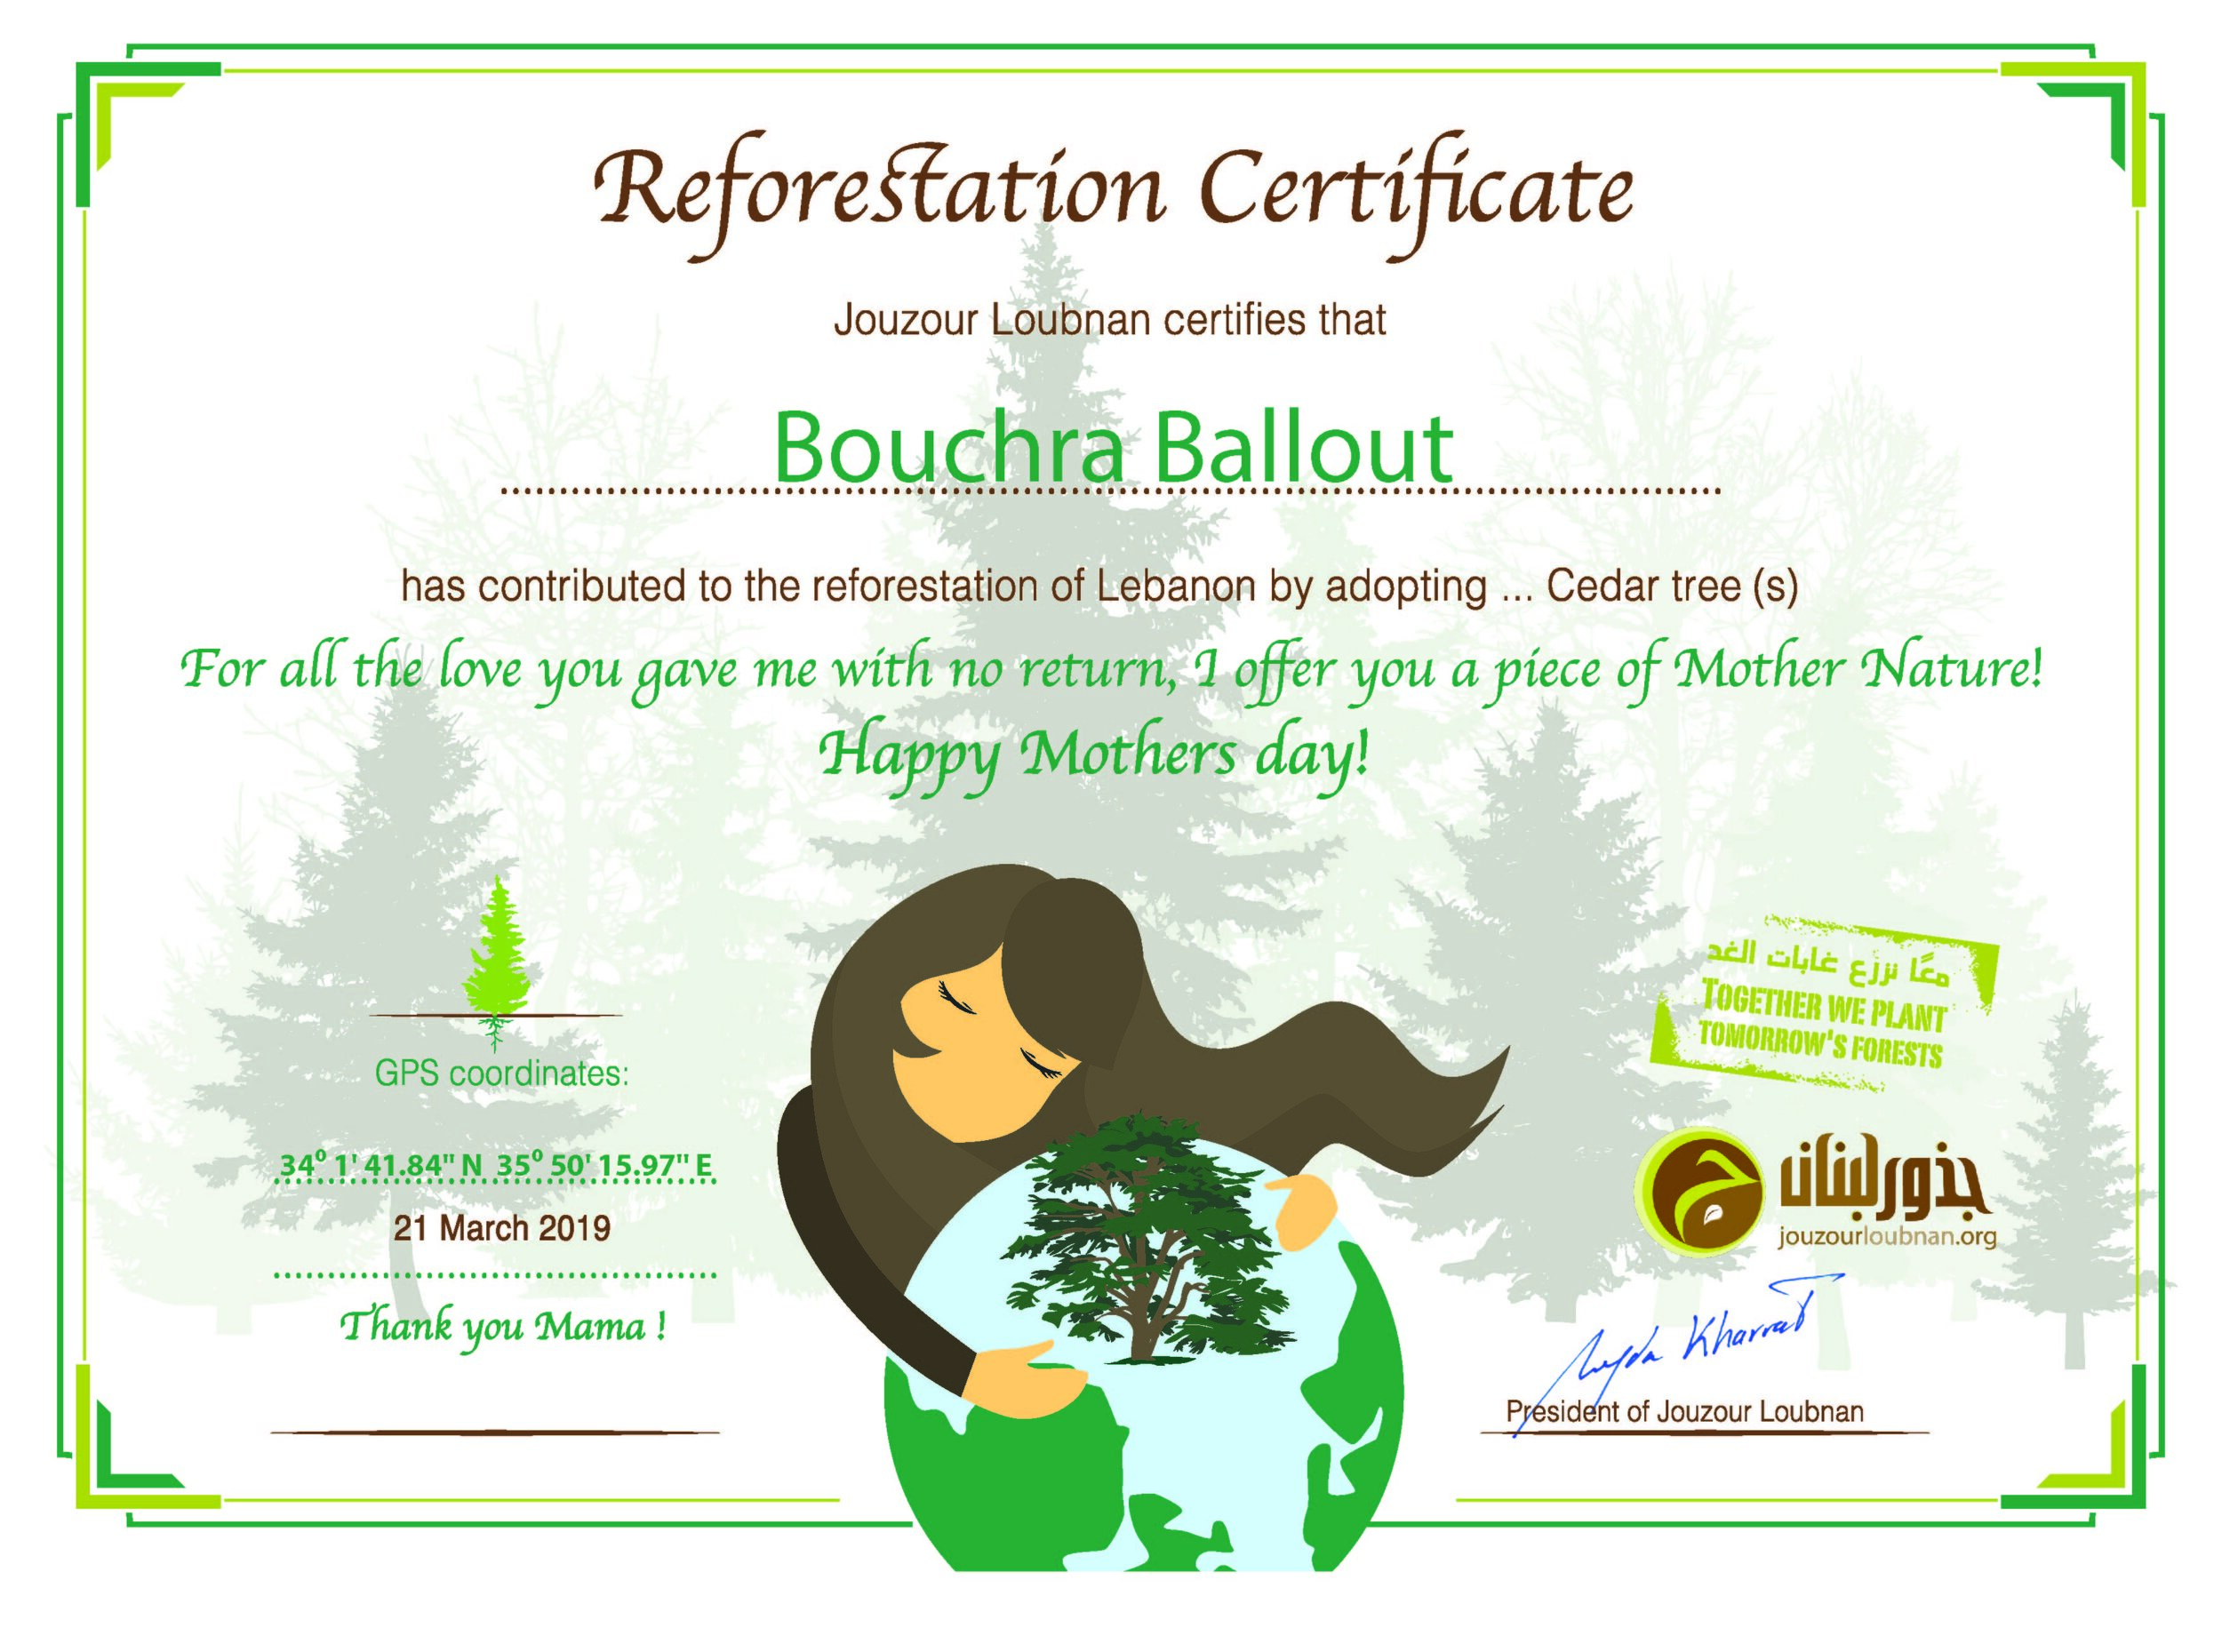 Mother's Day Certificate Jouzour Loubnan Adopt a Cedar Lebanon.jpg